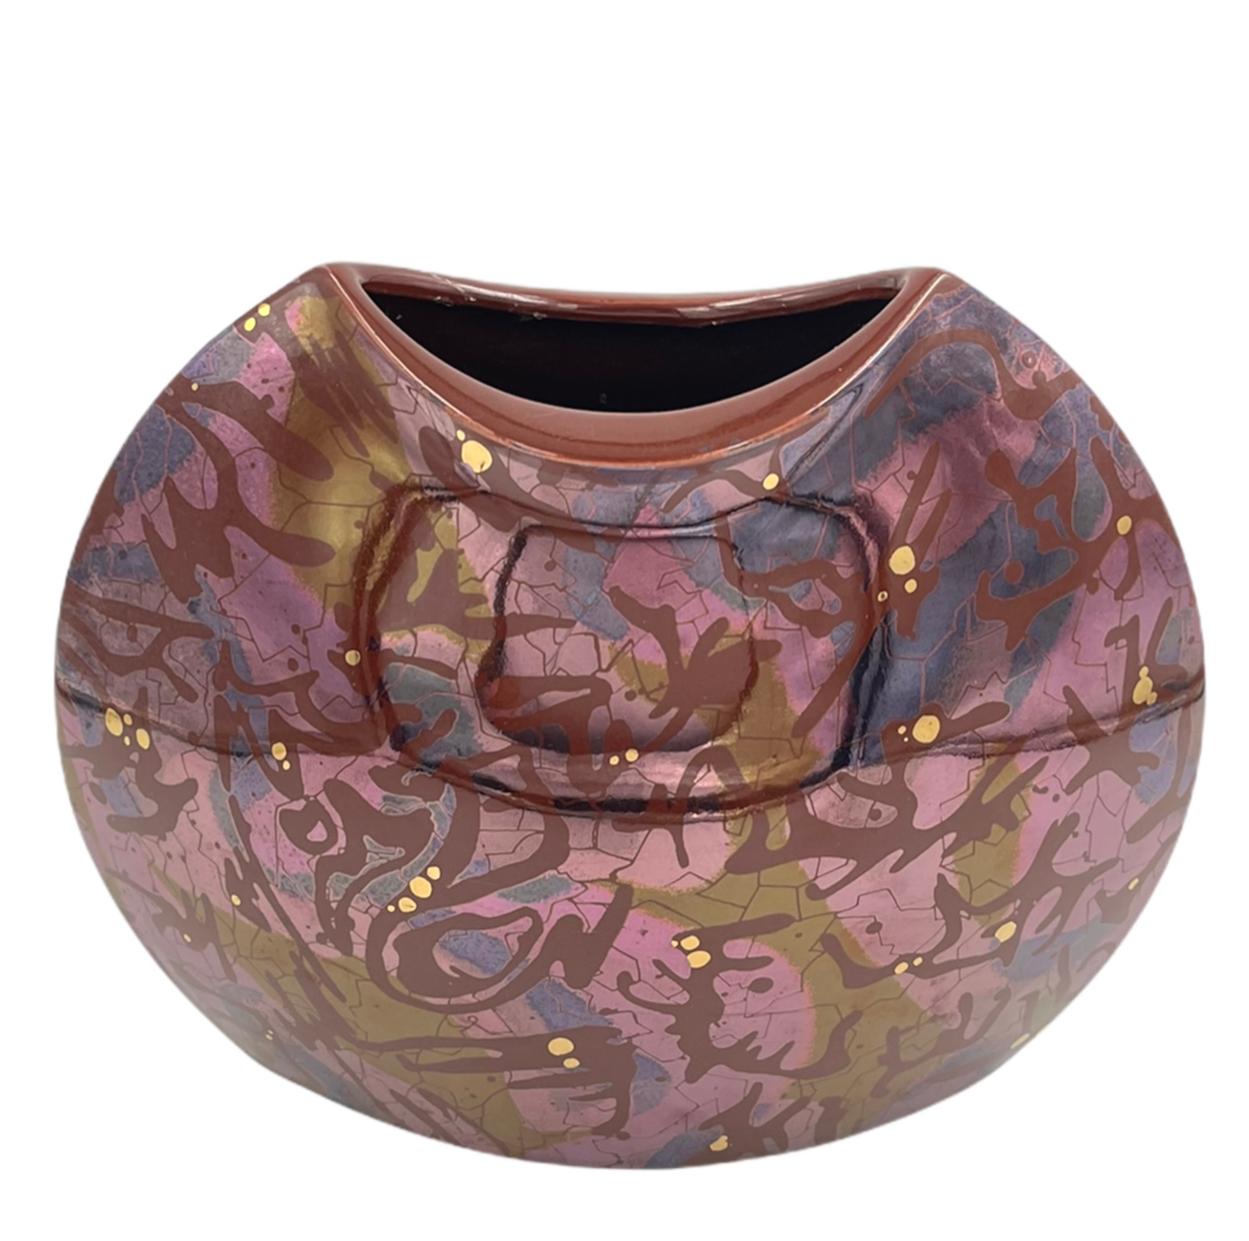 Bay Keramik Vase In Good Condition For Sale In Bastrop, TX